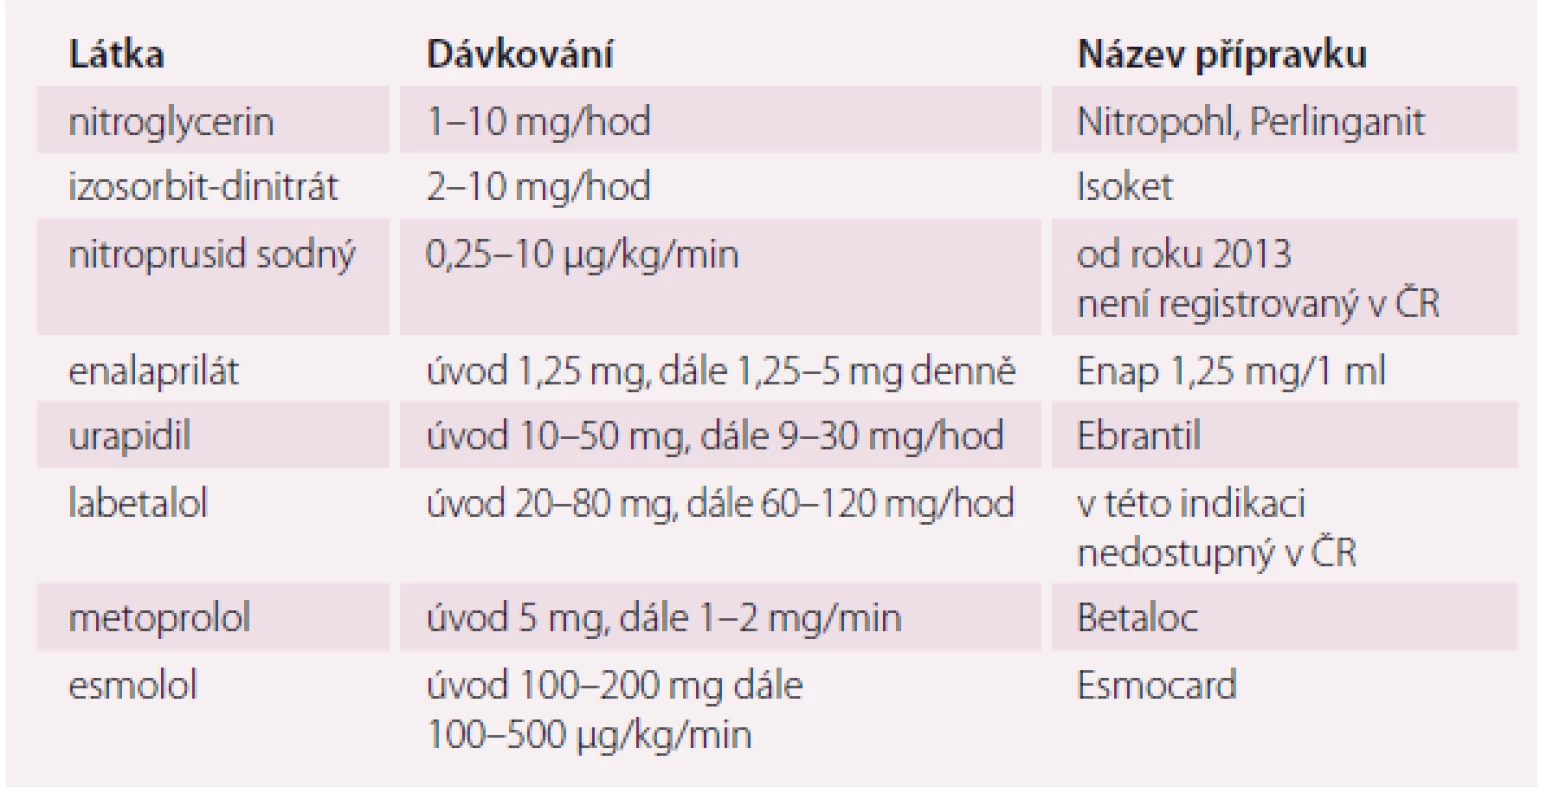 Přehled parenterálních antihypertenziv používaných u akutního koronárního syndromu.